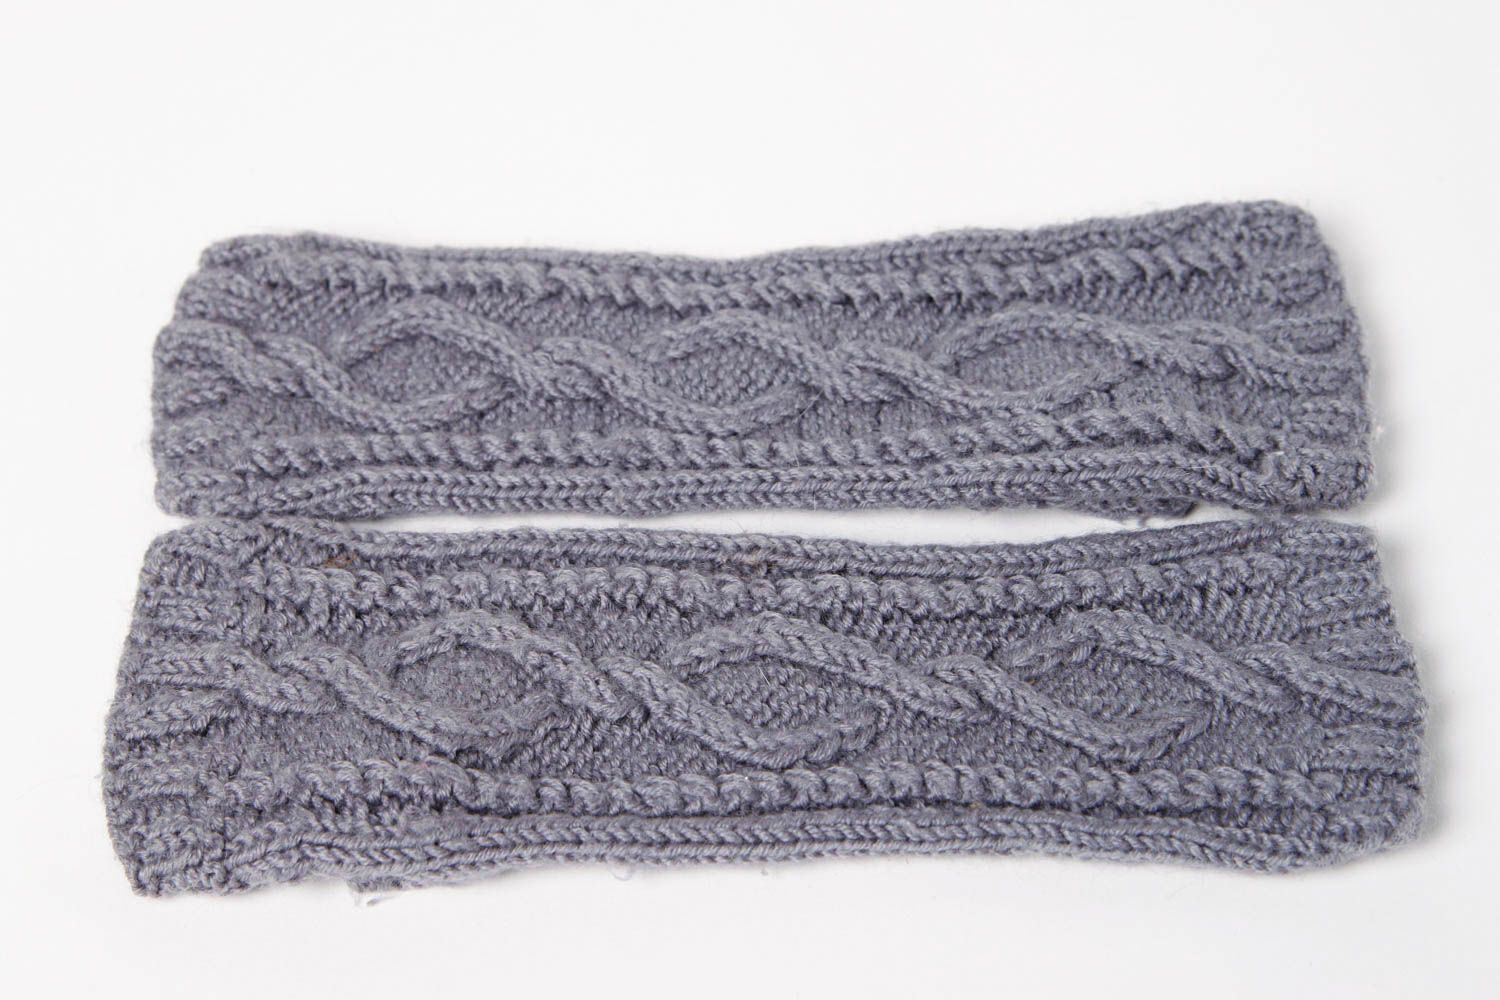 Handmade knitted mittens winter mittens winter accessories designer mittens photo 8